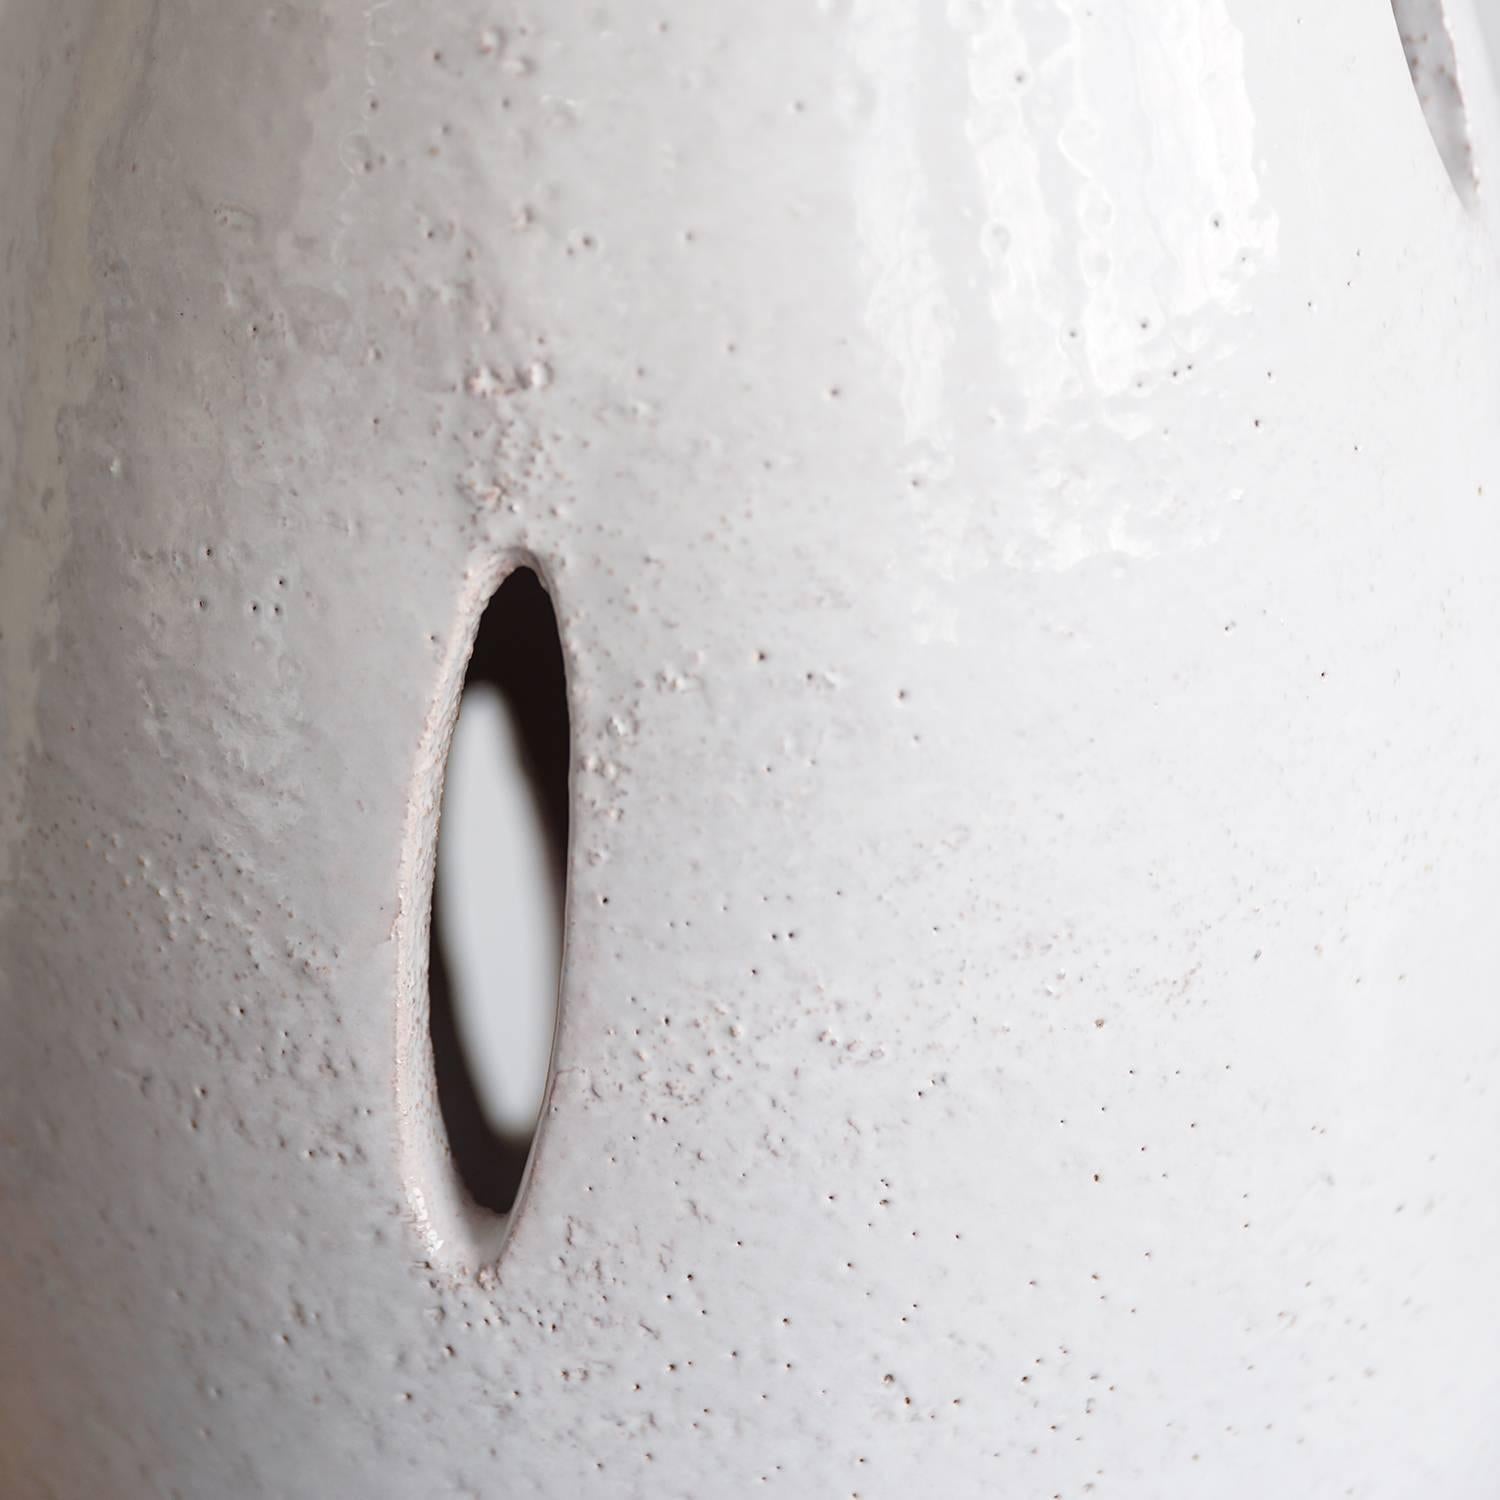 Elegant ceramic form with glossy, cream white glaze, walnut cylindrical base, and original burlap shade.